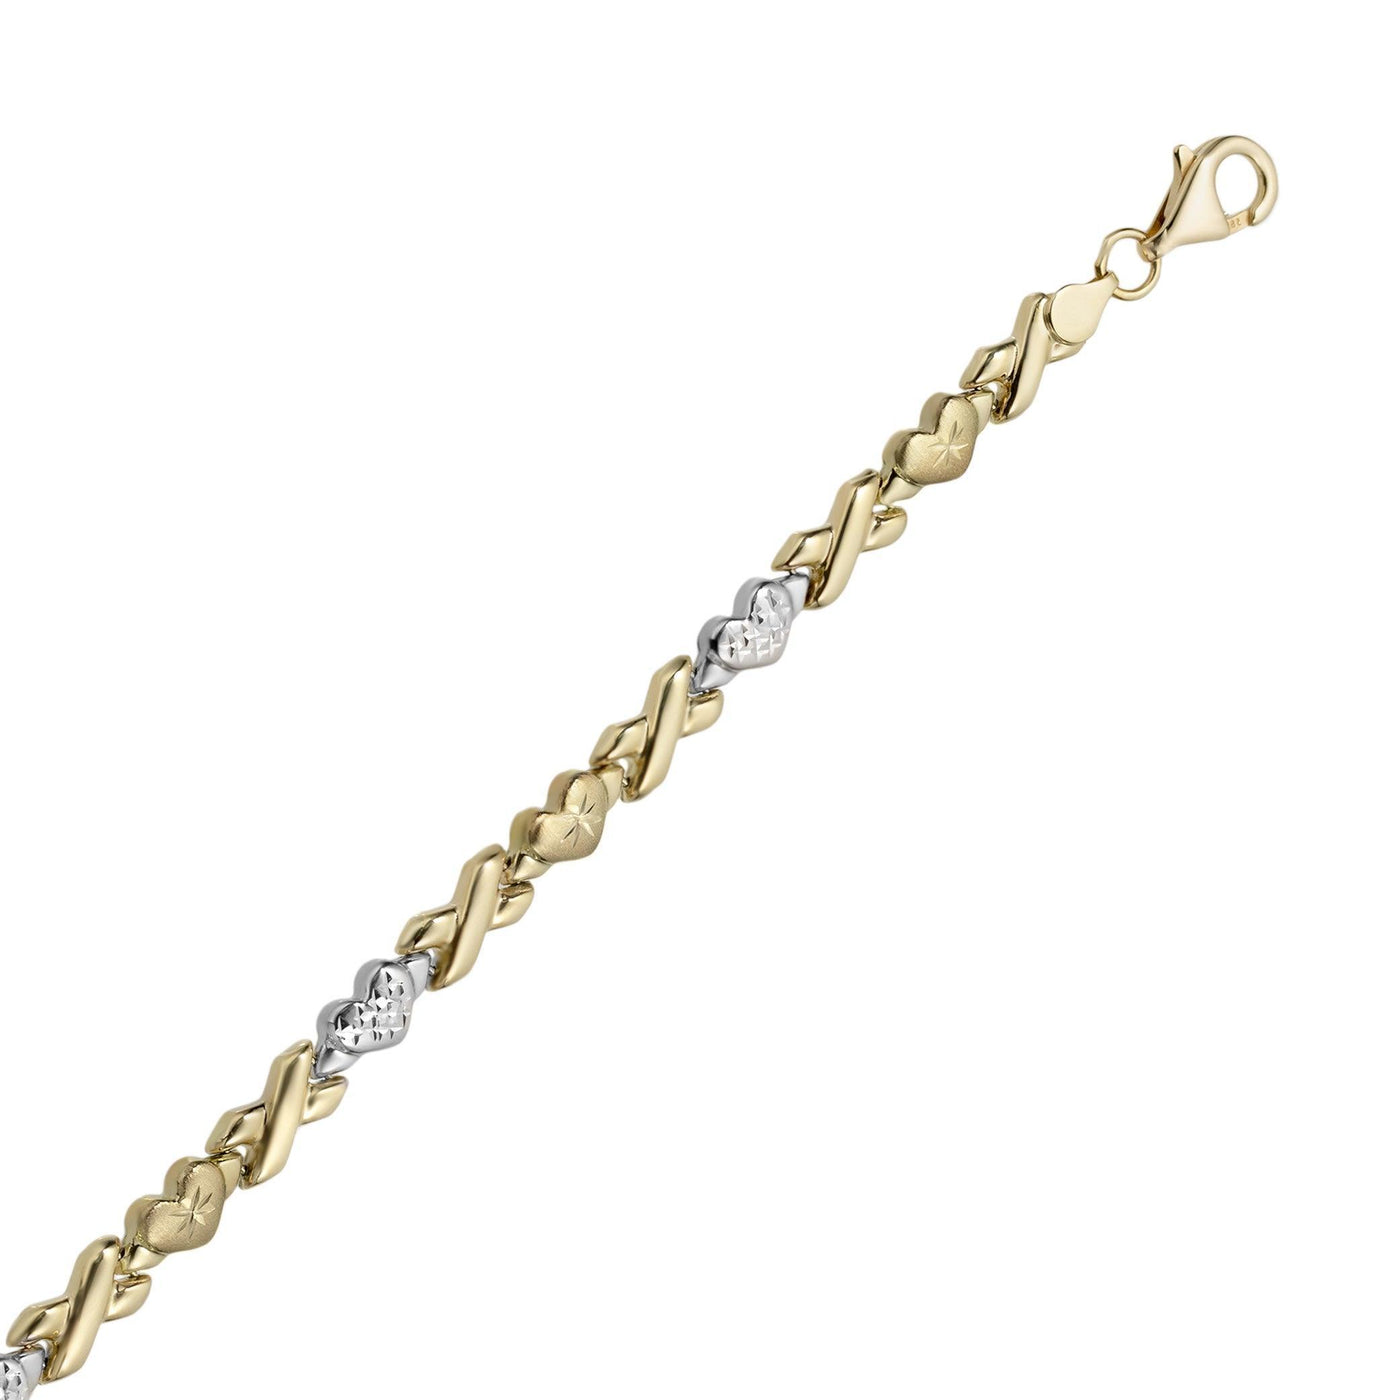 5mm Hearts & Kisses Diamond Cut Stampato Bracelet 14K Yellow White Gold - bayamjewelry